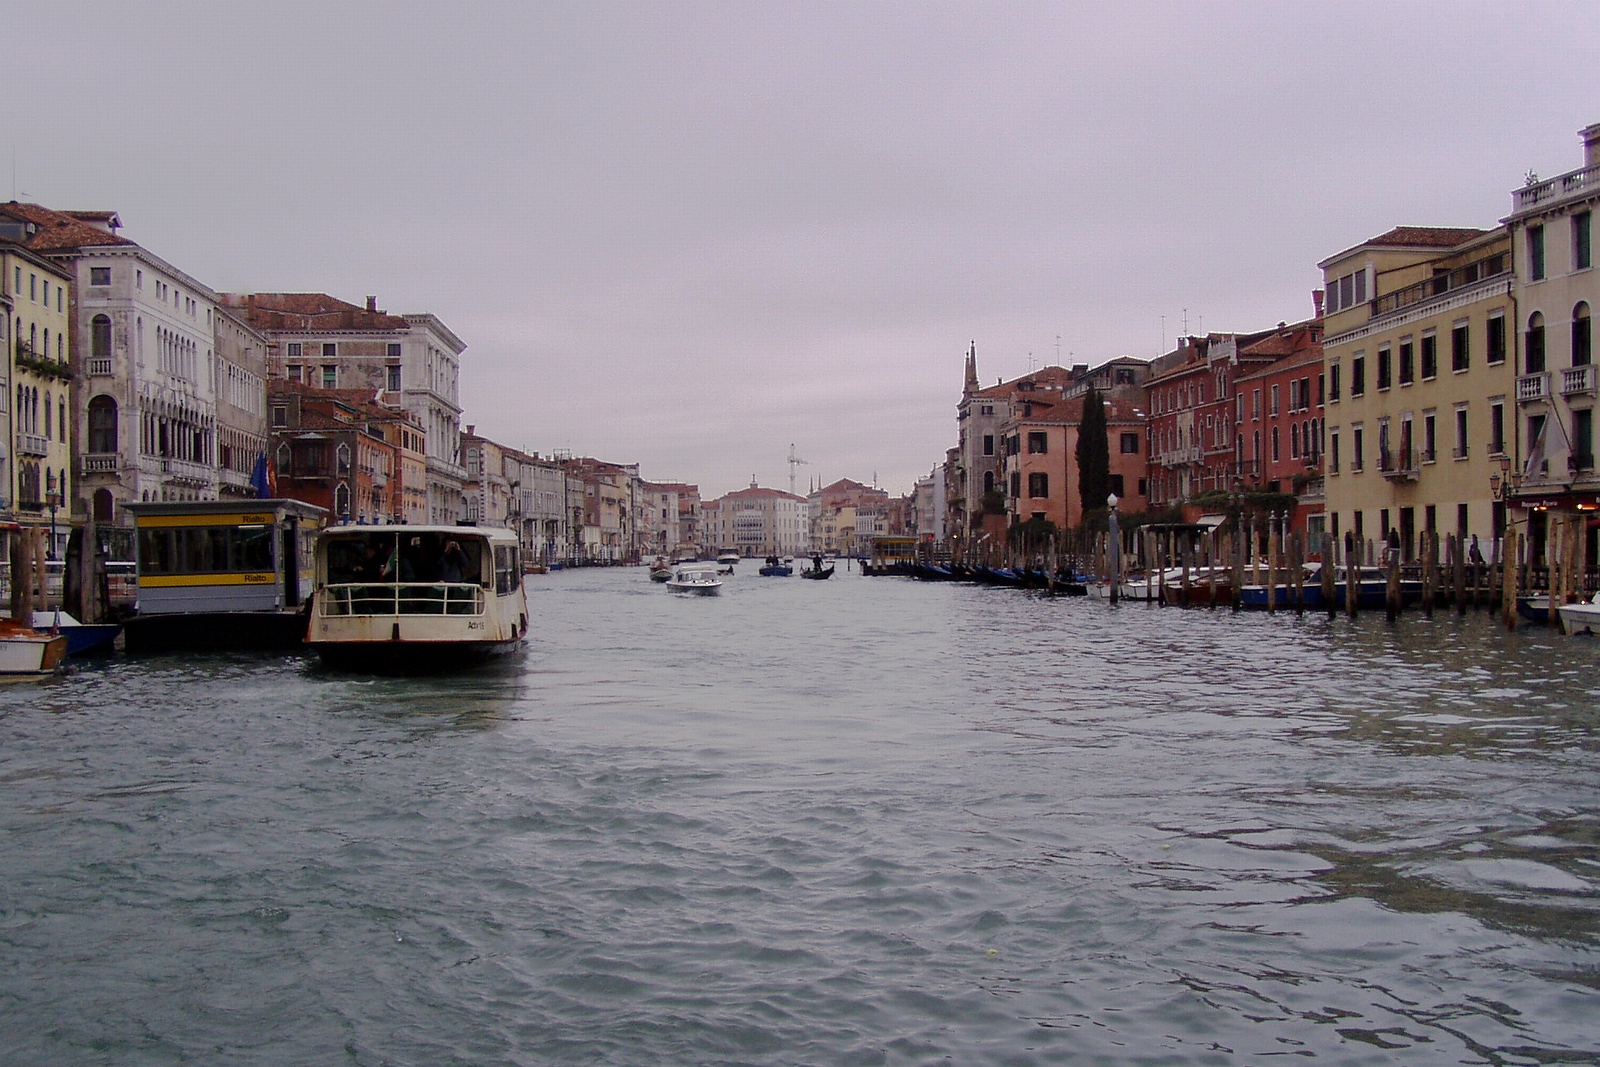 Benátky